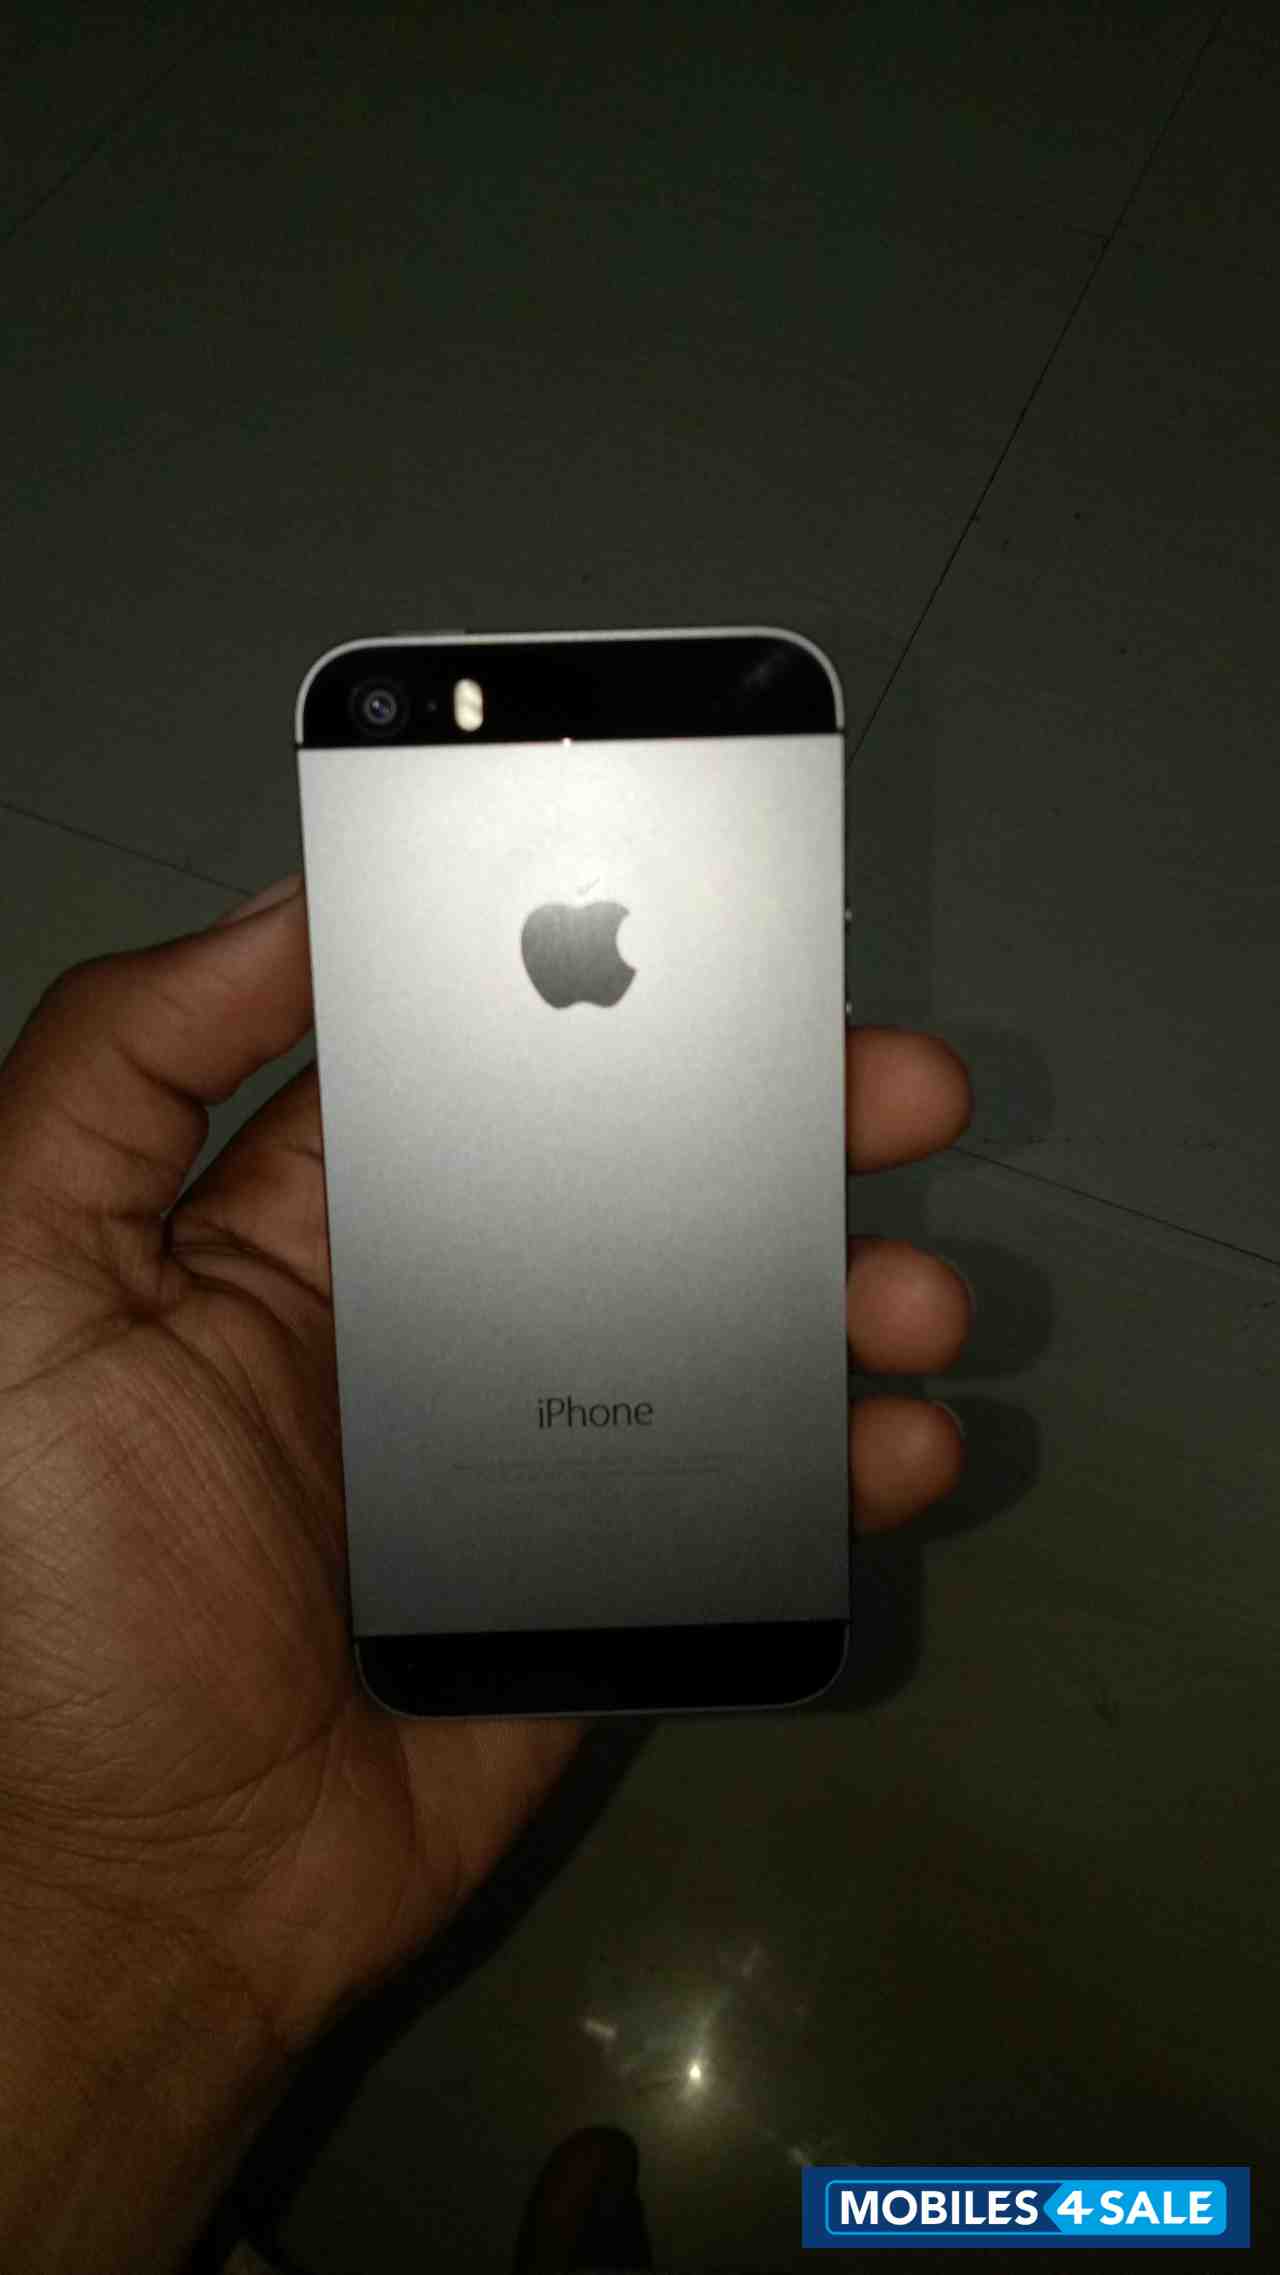 Grey Apple iPhone 5S